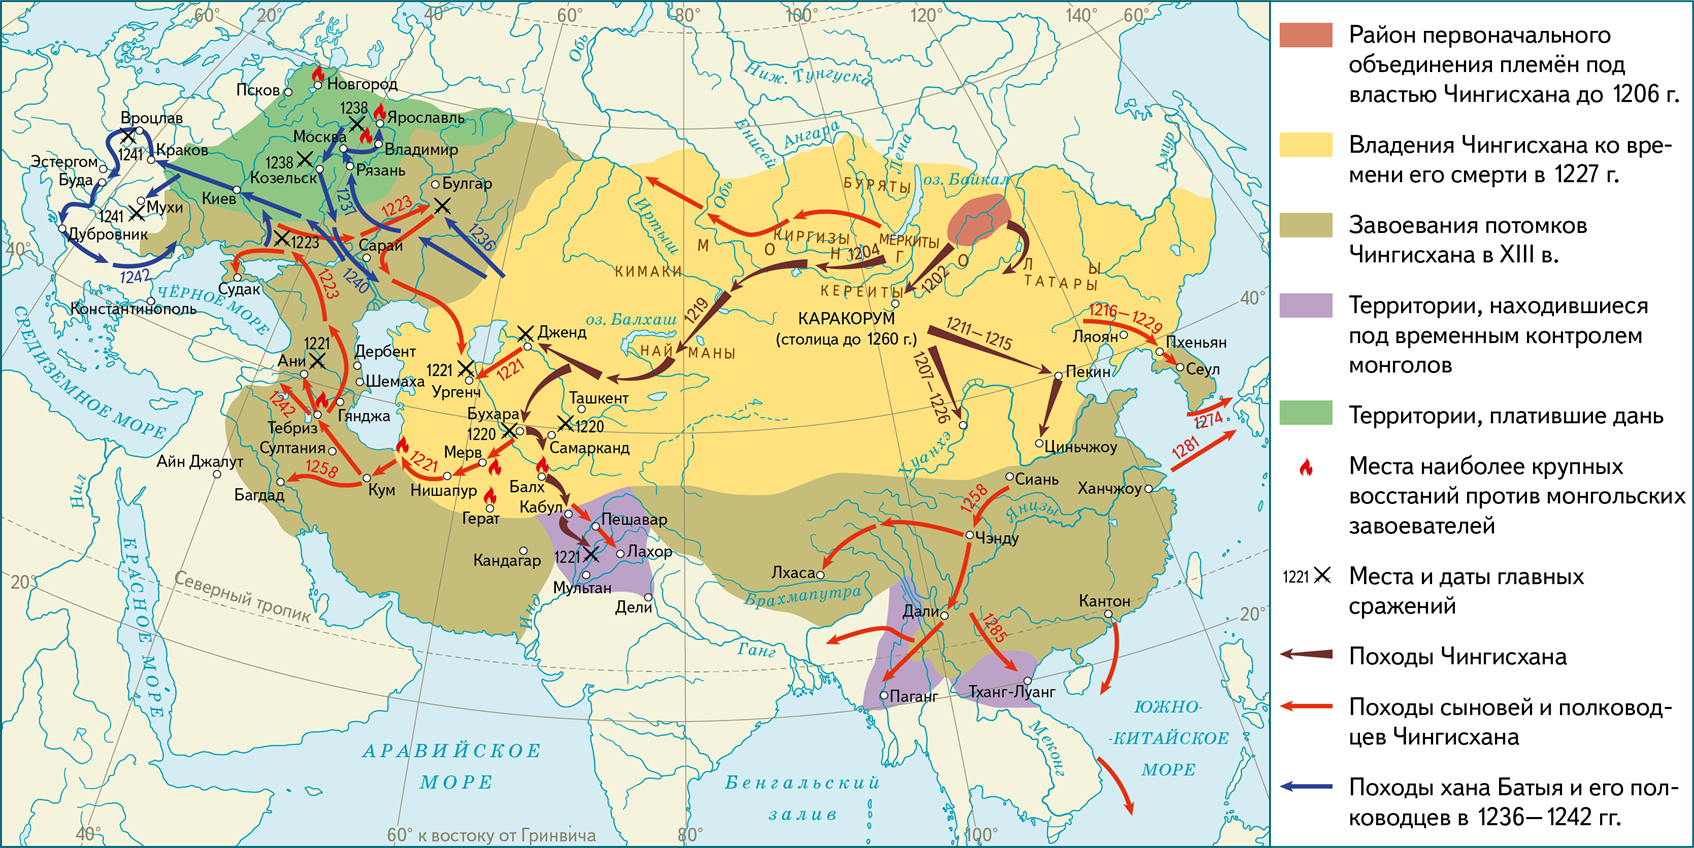 Завоевательные походы Чингисхана карта. Монгольская Империя 12 век. Монгольская Империя Чингисхана карта. Монгольские завоевания Чингисхана на карте. Государства которые были завоеваны татаро монголами